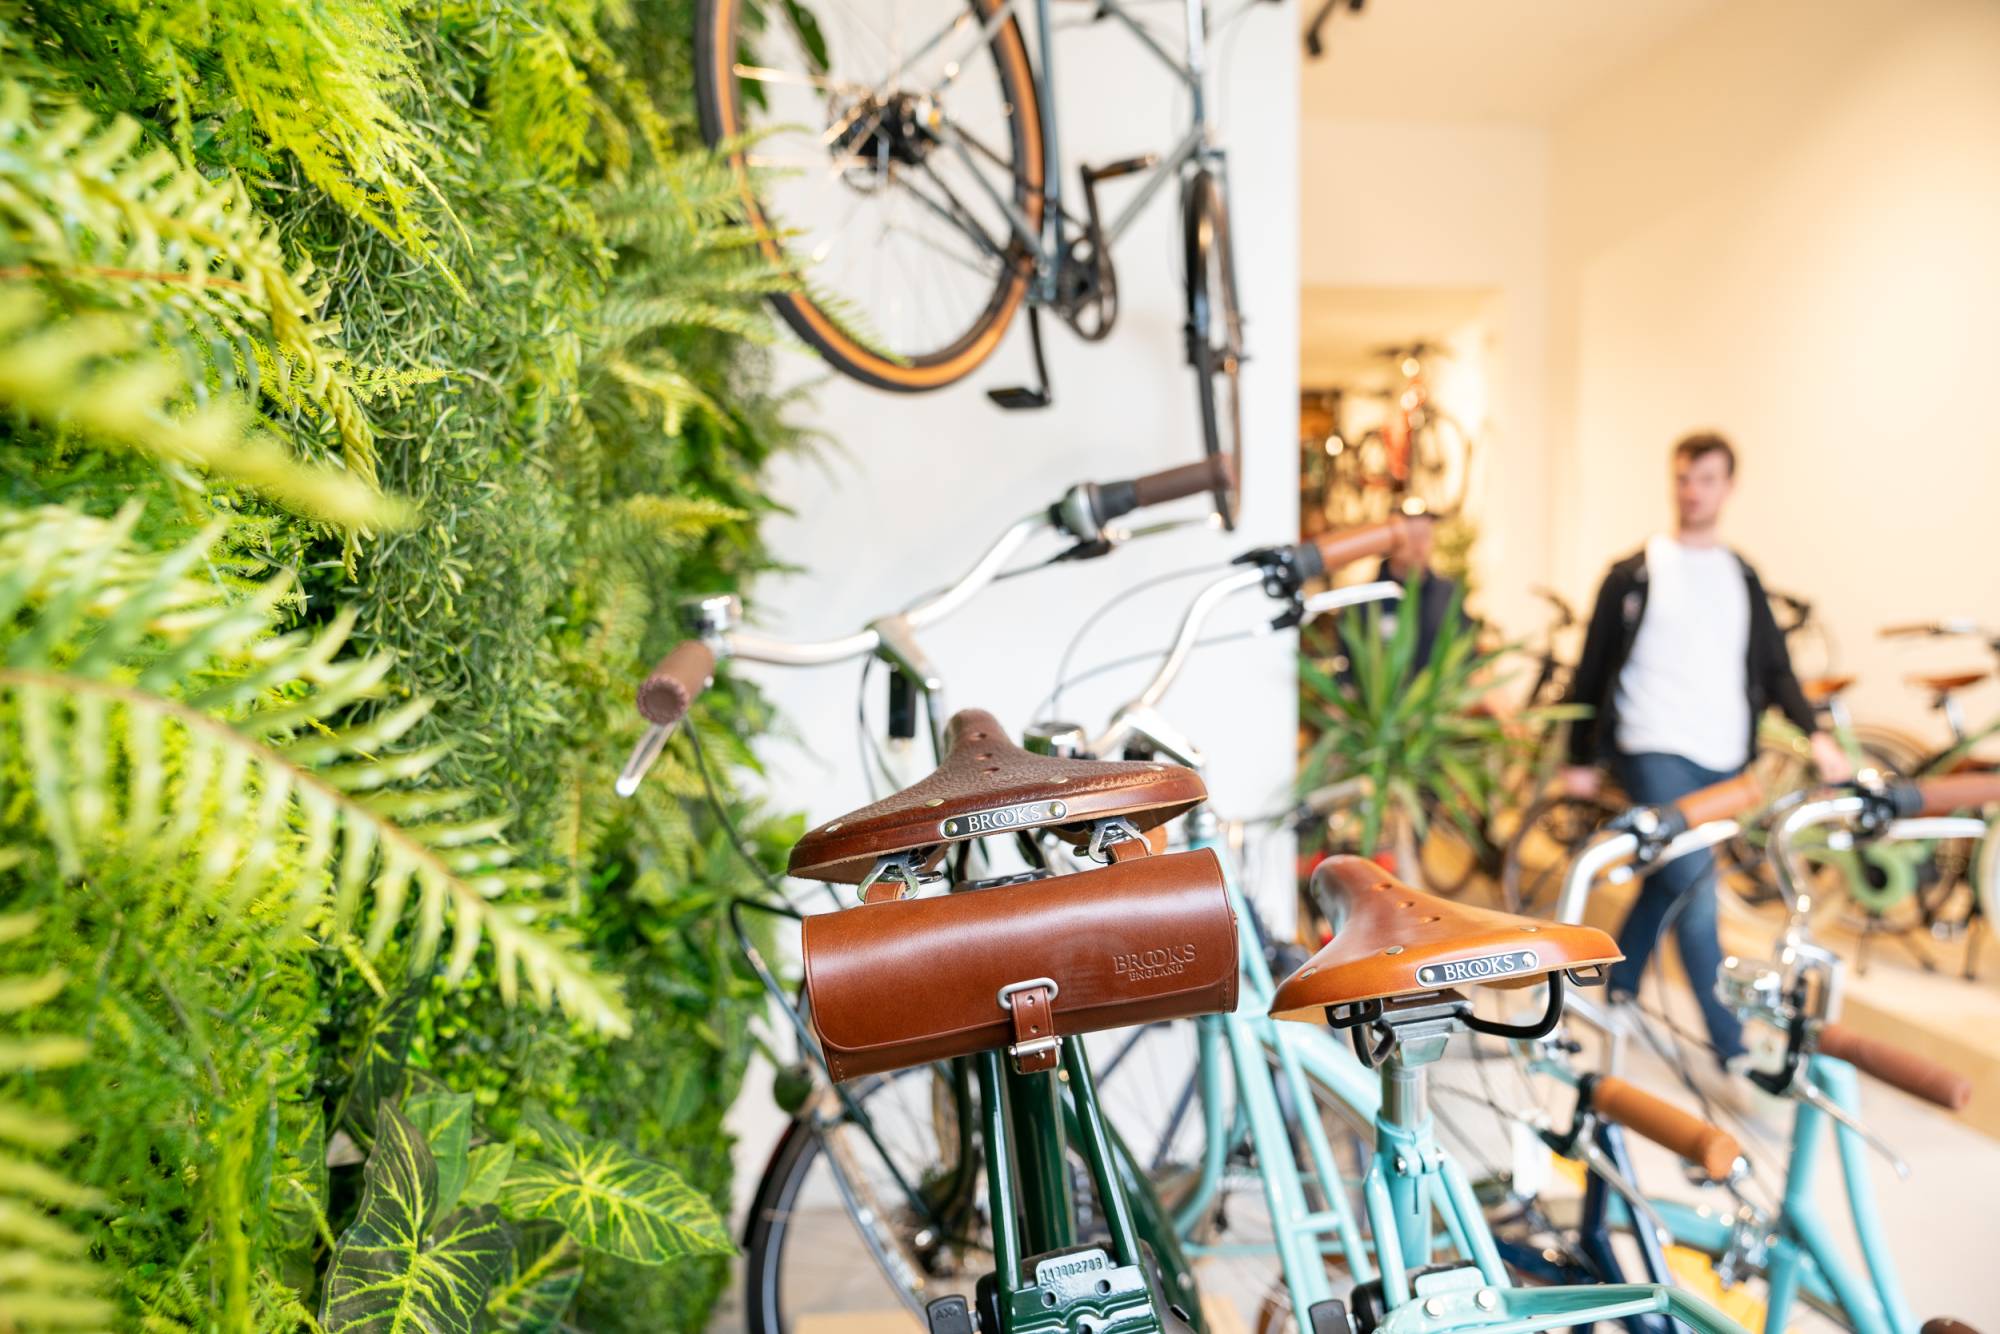 Bicycle store 'De Geus'